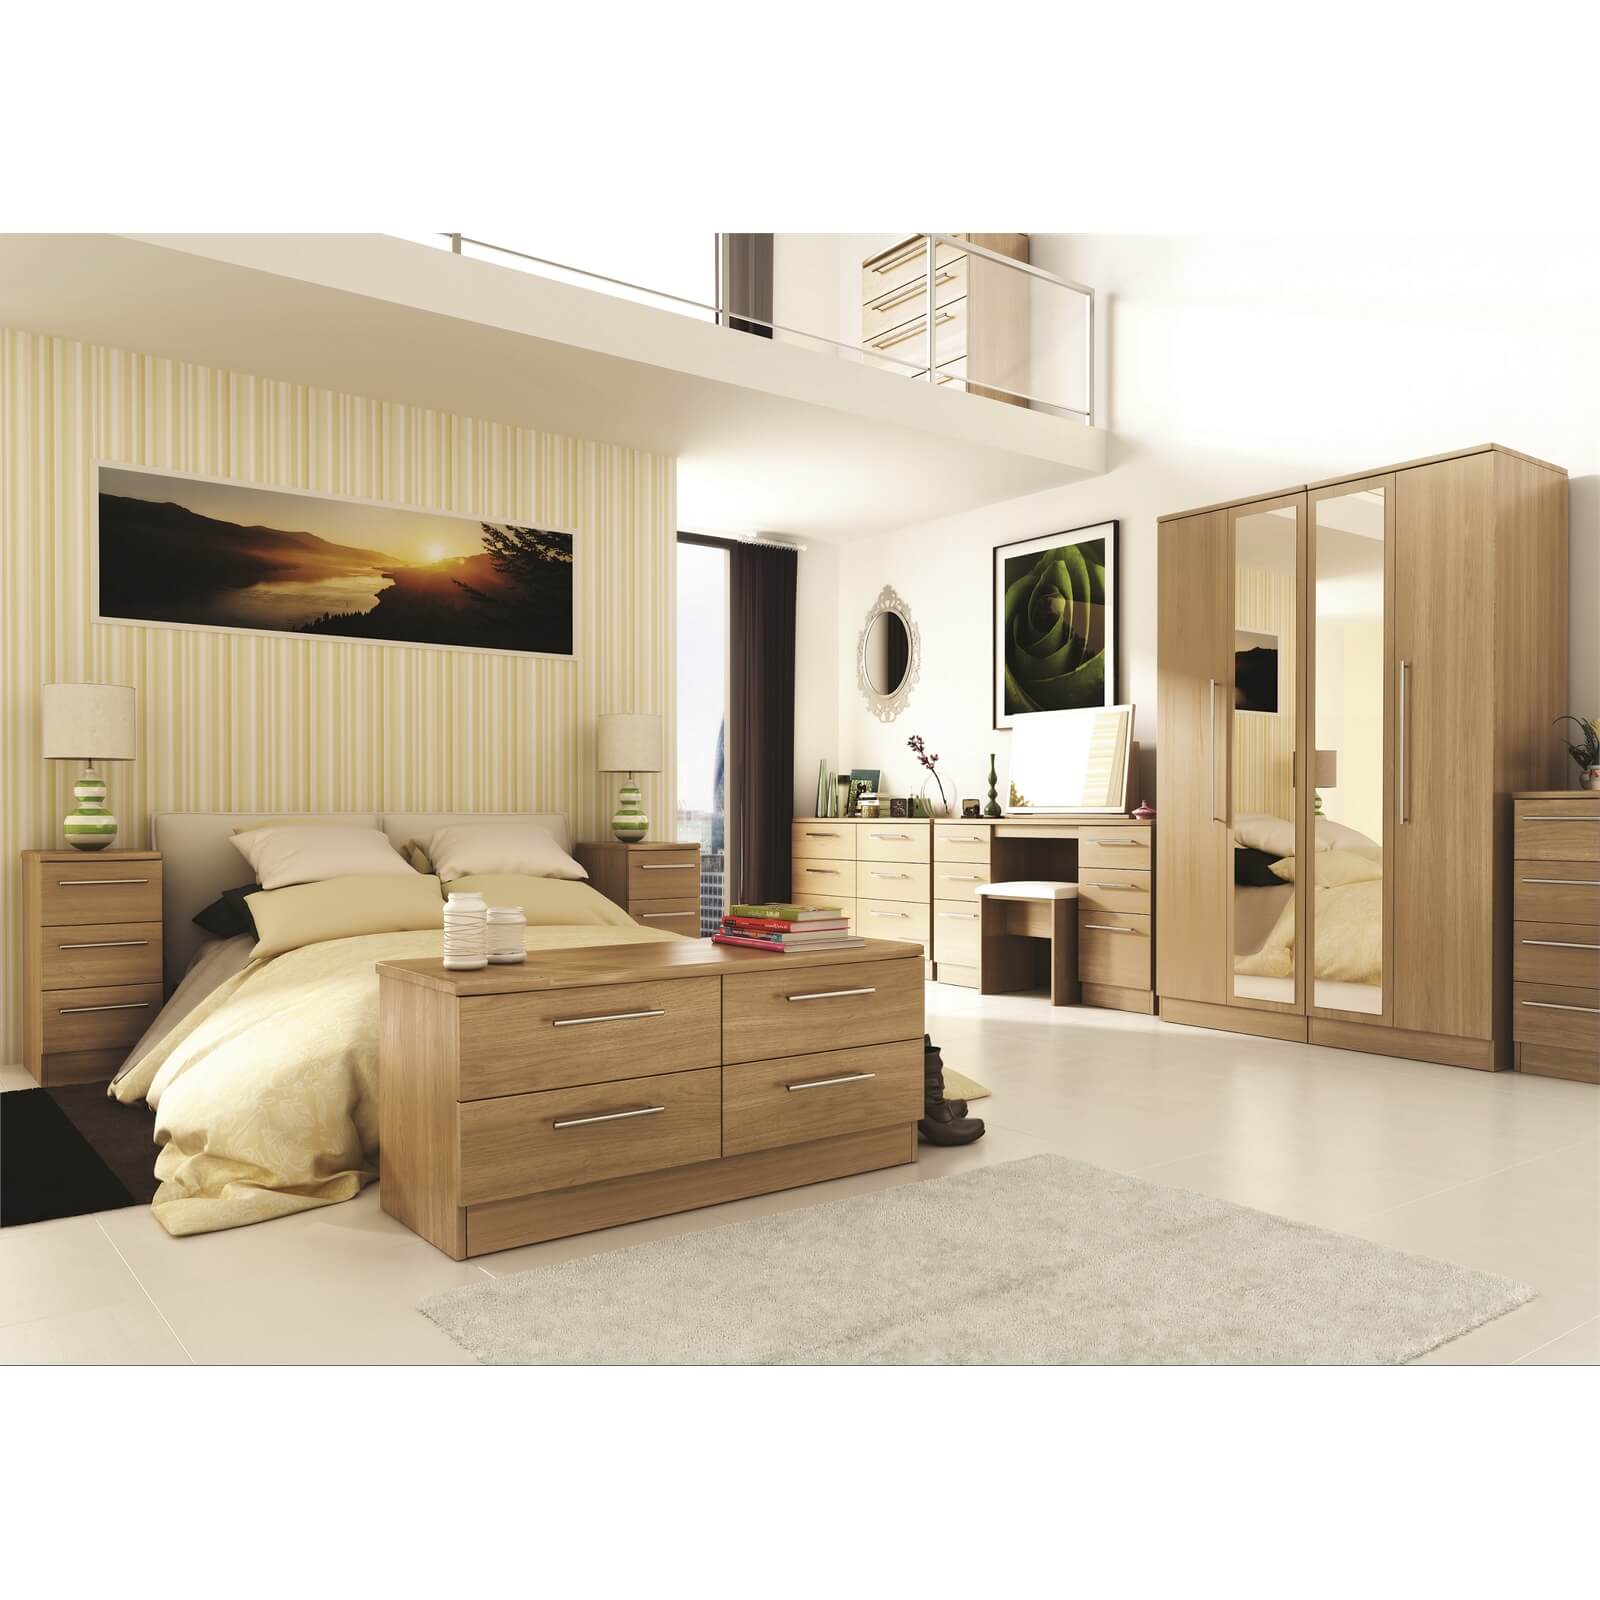 Siena Modern Oak 3 Drawer Bedside Cabinet - Rechargeable